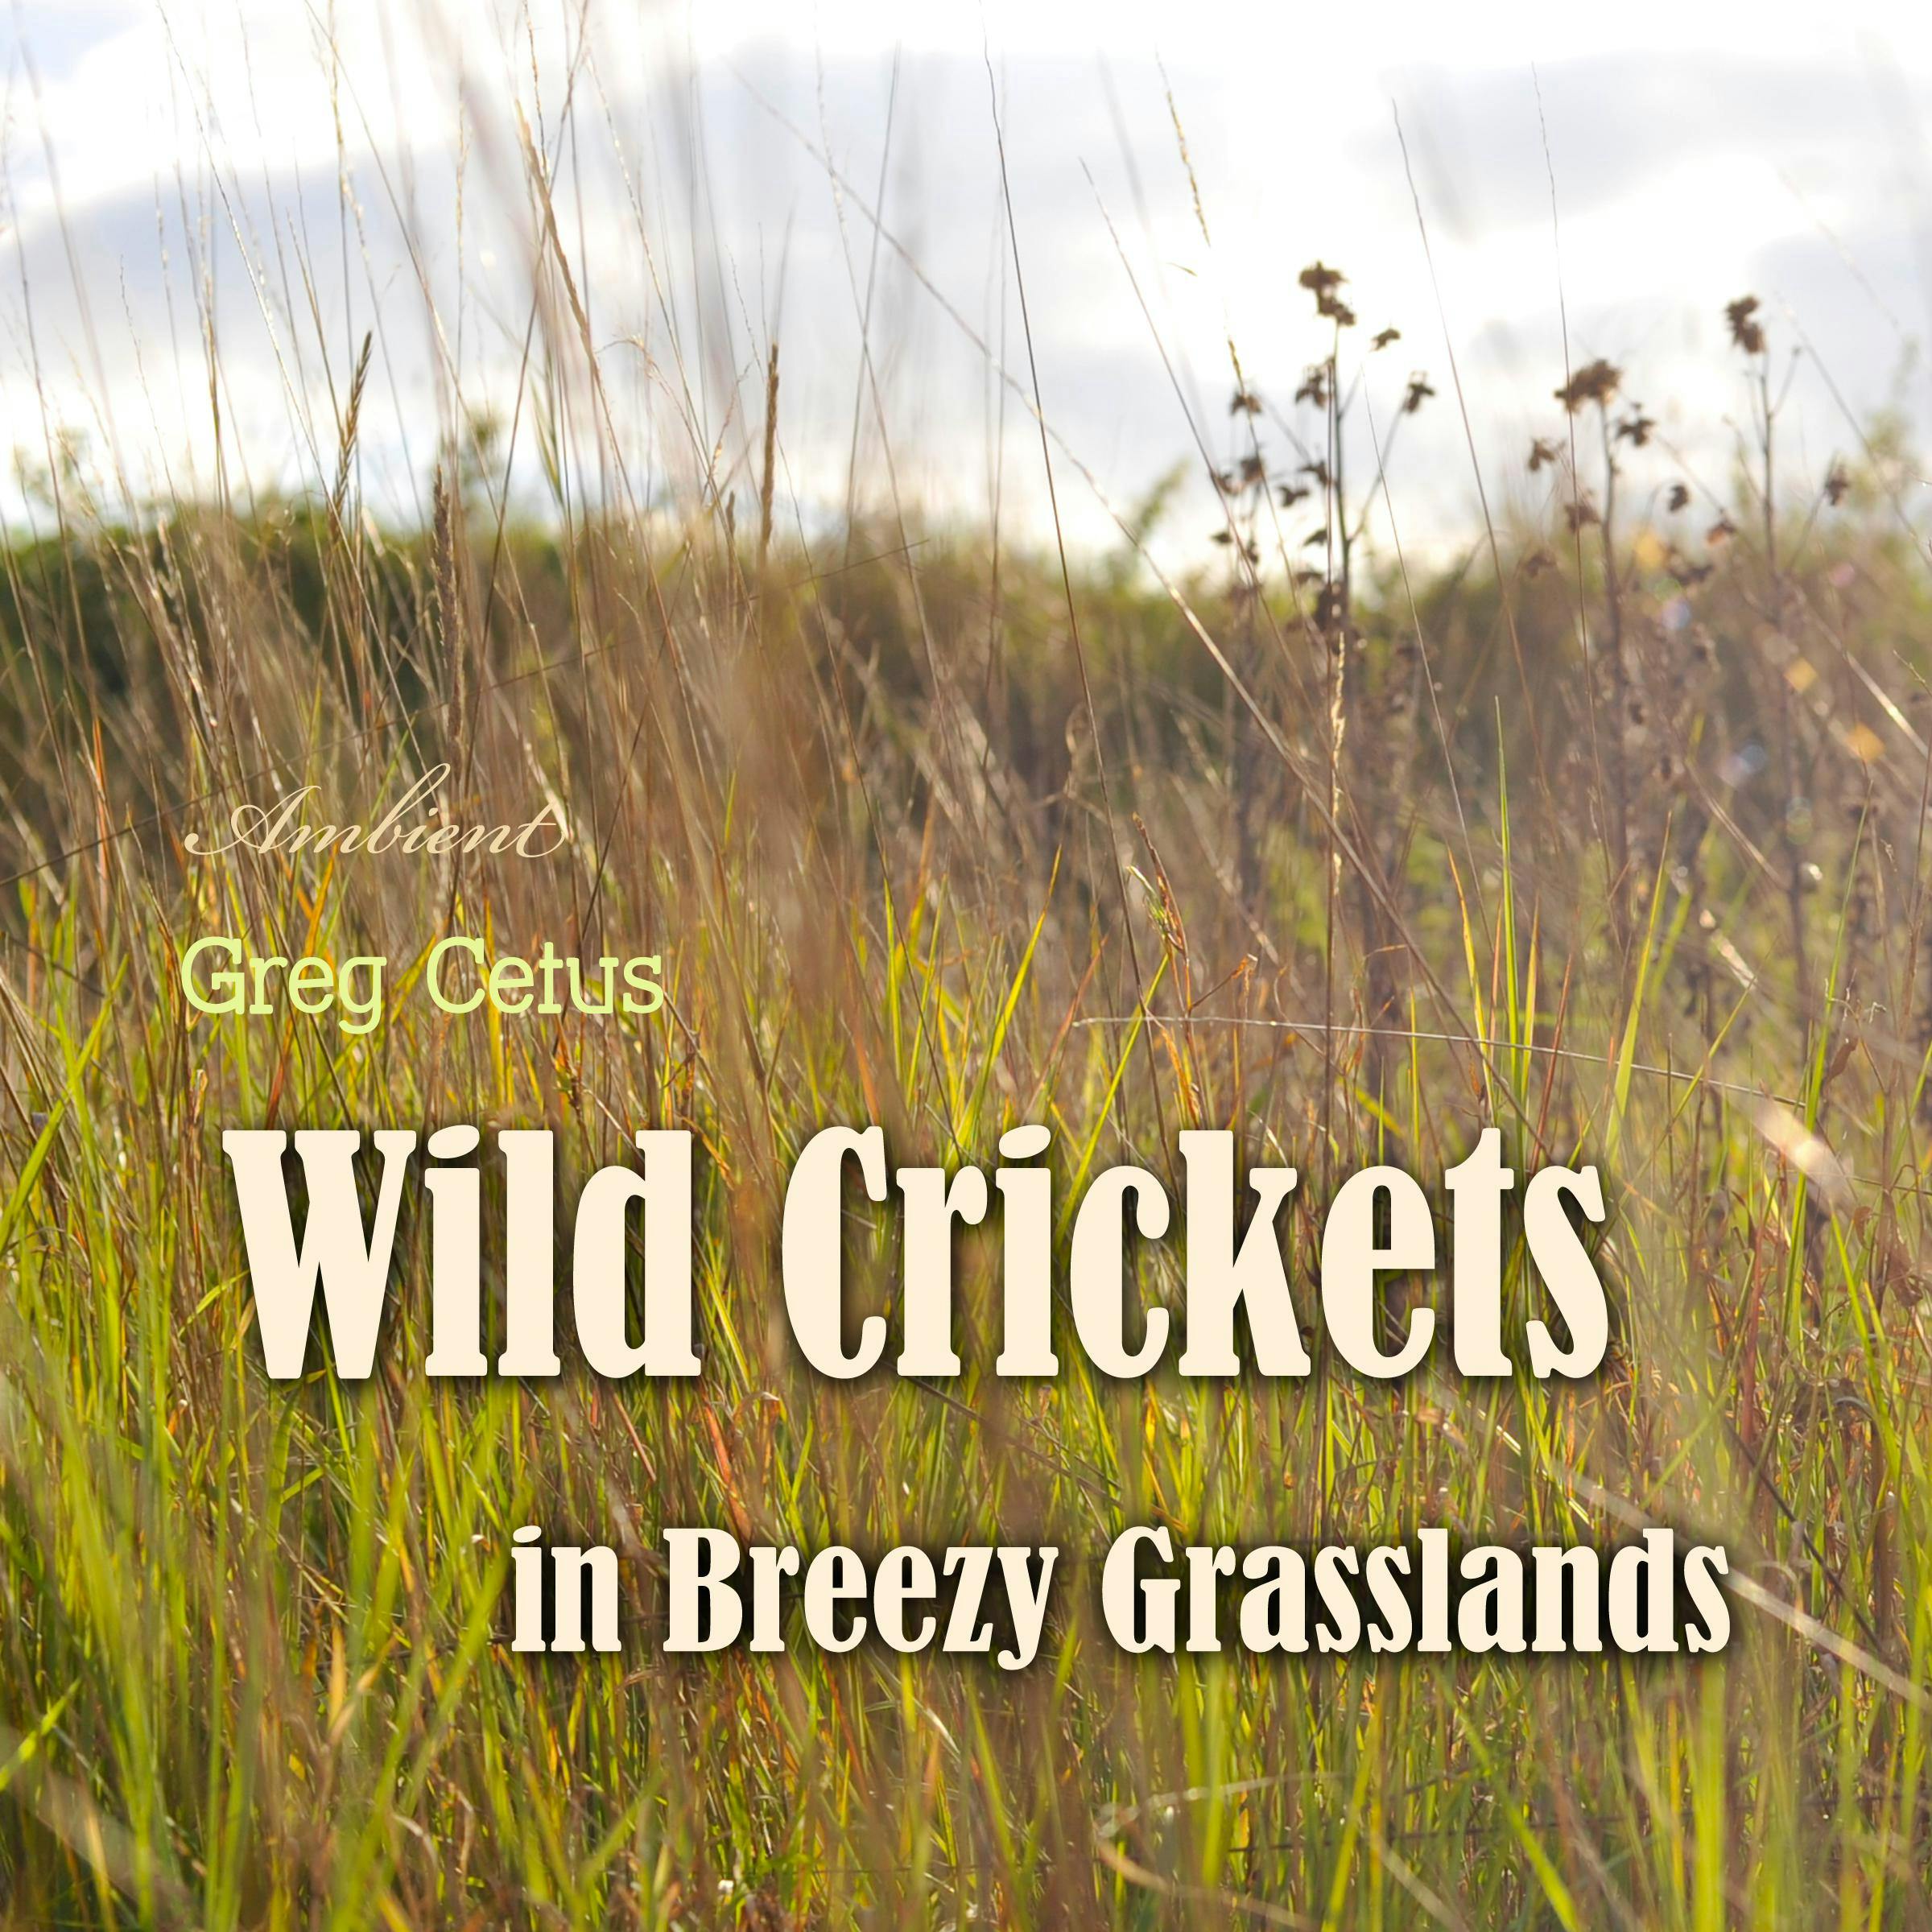 Wild Crickets in Breezy Grasslands - Greg Cetus